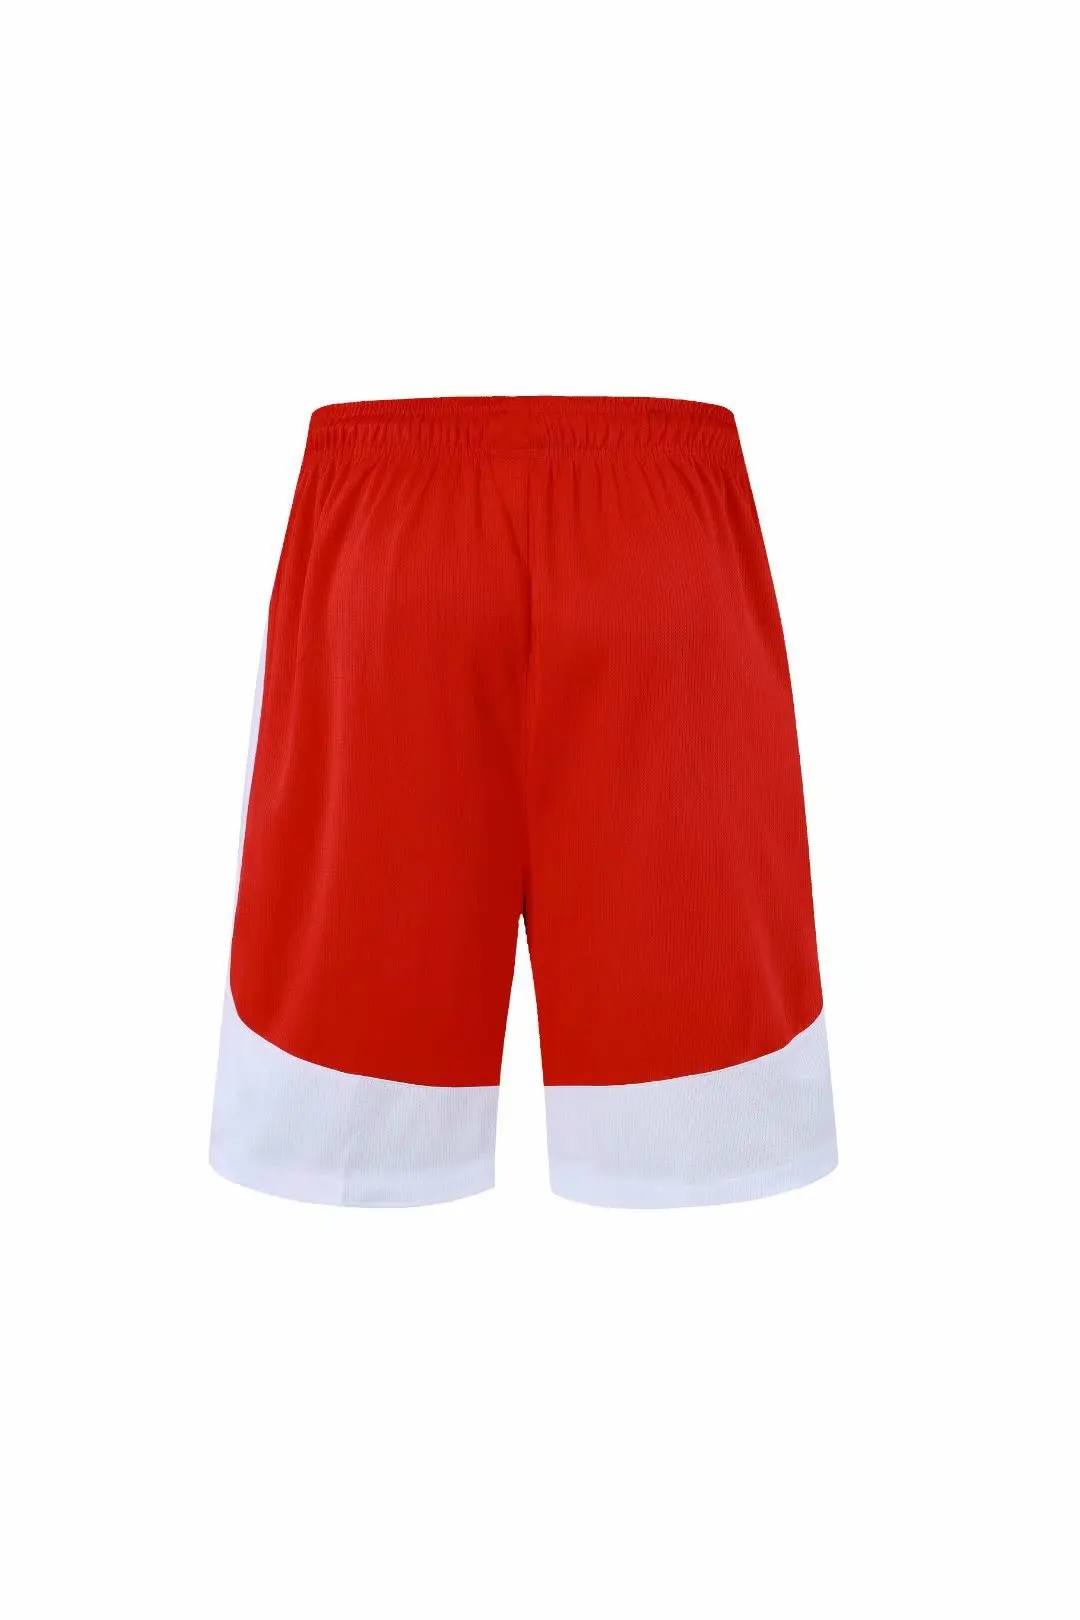 Баскетбольные короткие мужские дышащие тренировочные плотные пляжные спортивные шорты мужские с карманом на молнии для бега фитнес быстросохнущие шорты набор